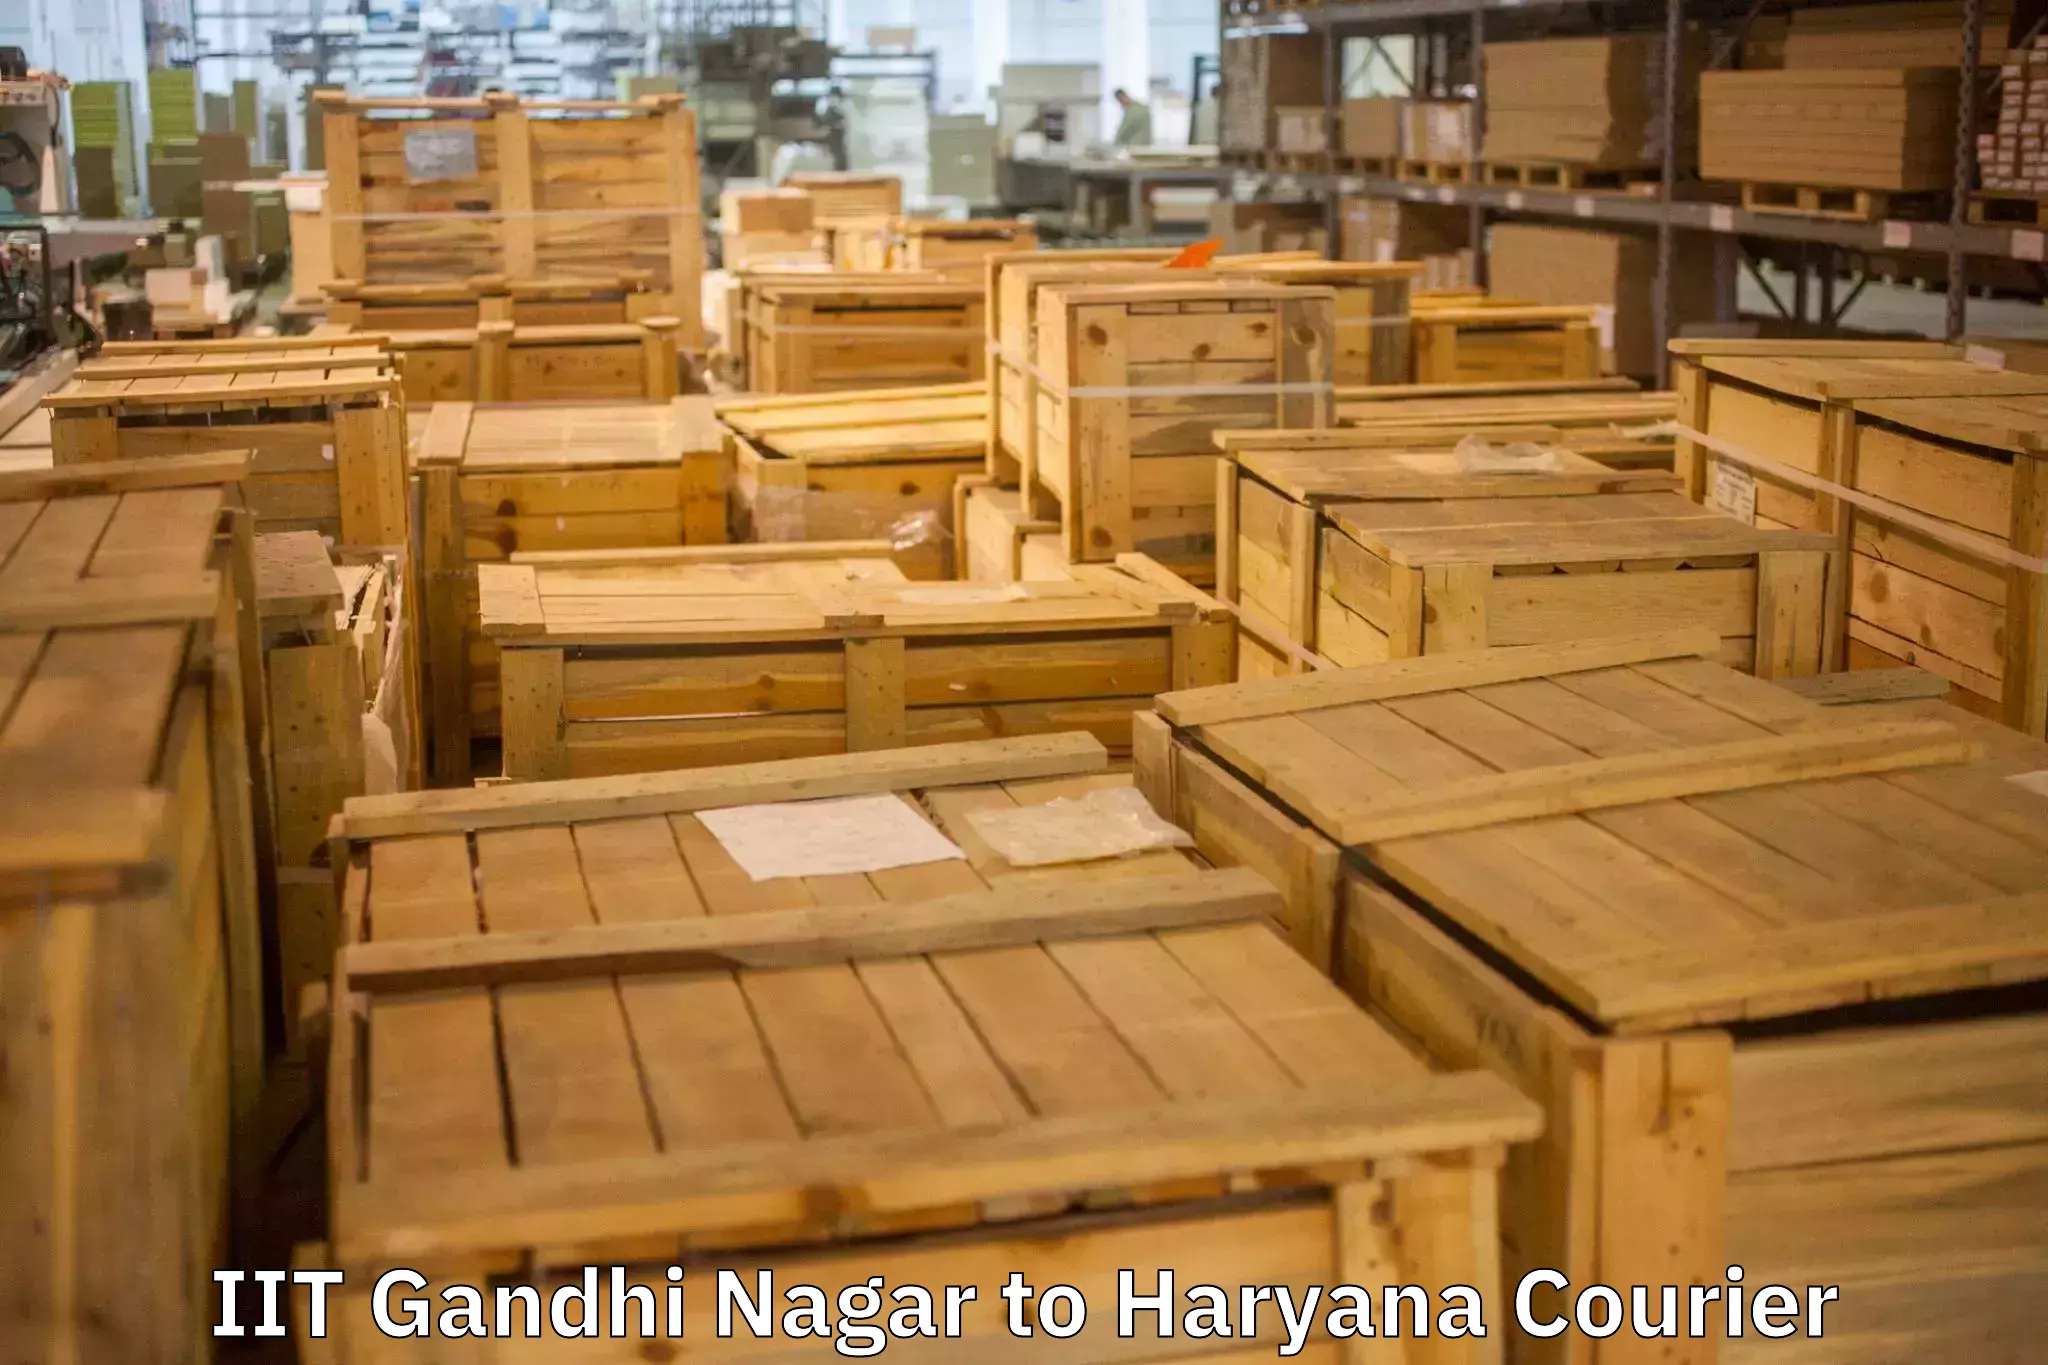 Personalized furniture moving IIT Gandhi Nagar to Gohana